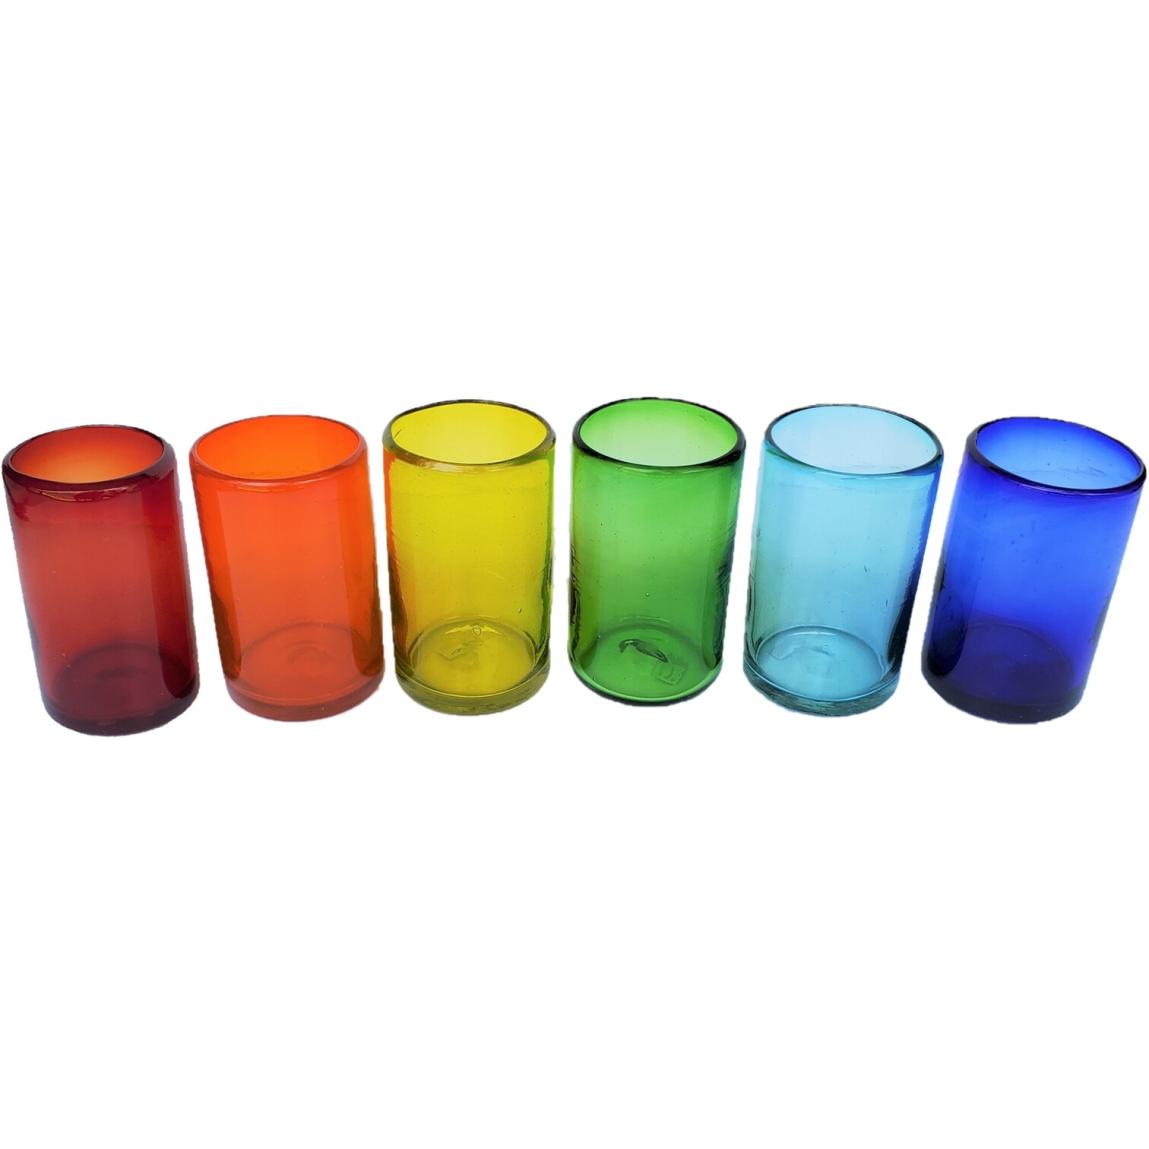 Novedades / vasos grandes de colores Arcoris / stos artesanales vasos le darn un toque clsico a su bebida favorita.